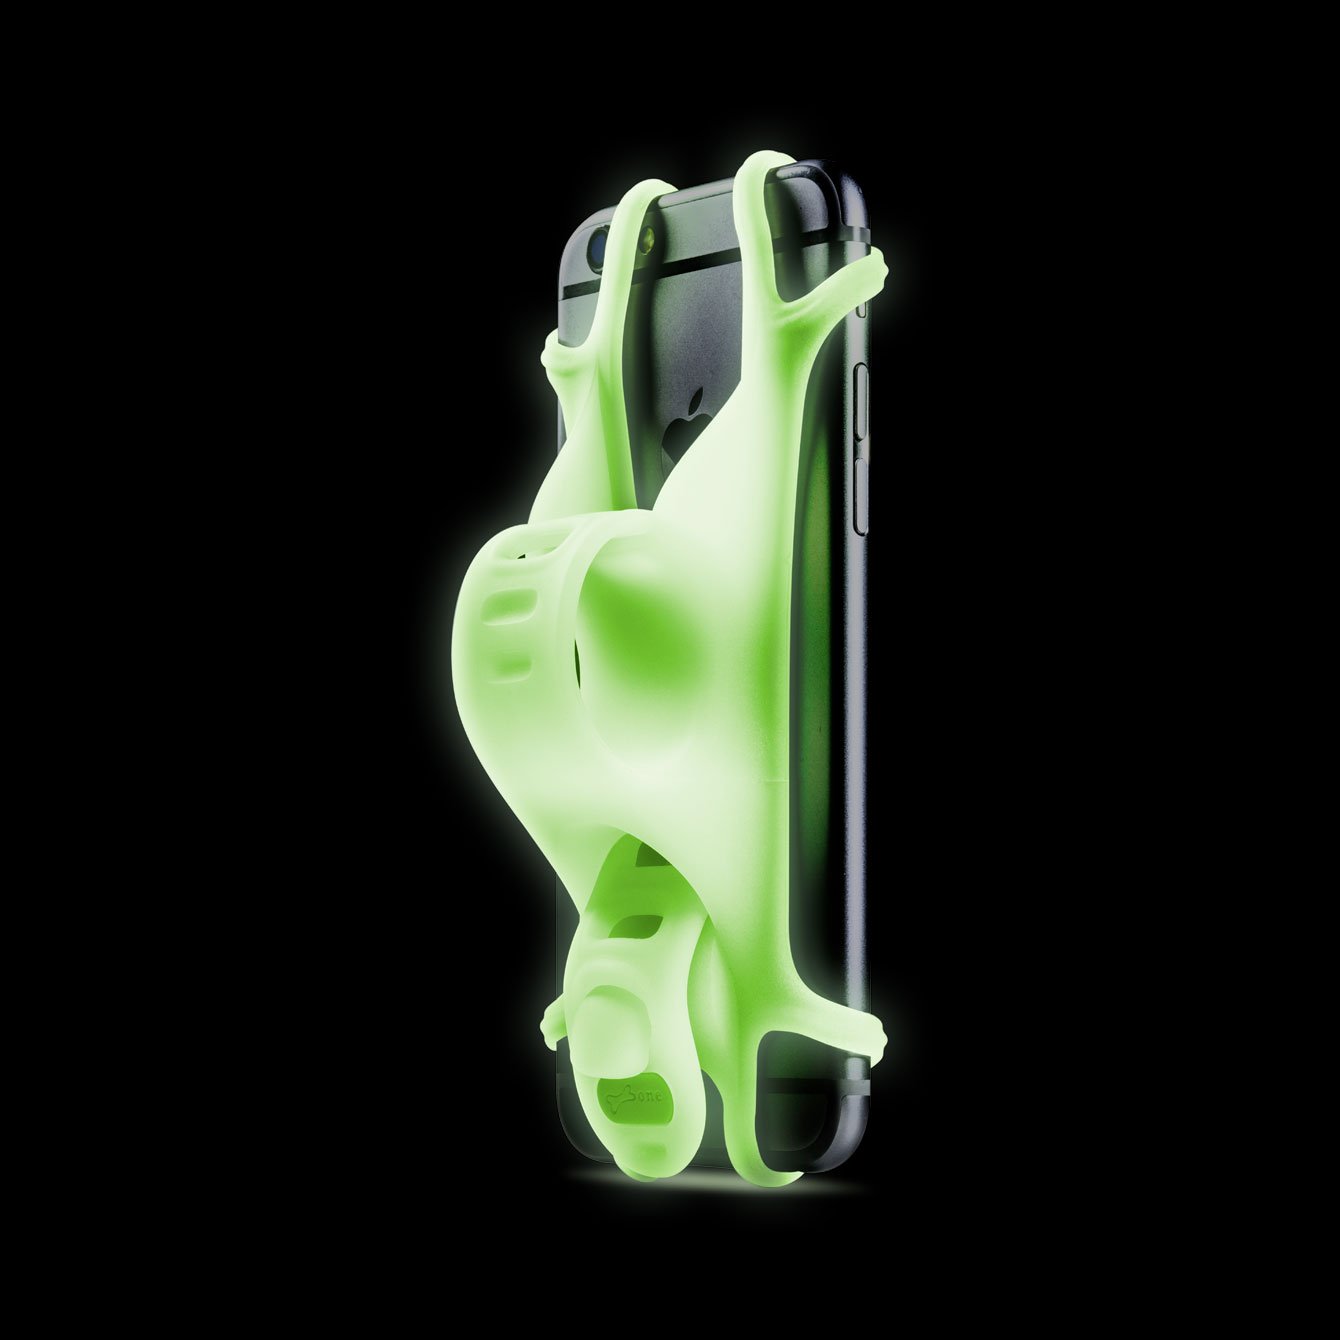 Держатель для смартфона Bone Collection BIKE TIE, силикон, на руль, 4.0'-6.0', люминисцентный зеленый, 07-150014 держатель для смартфона sbs e go для велосипеда самоката 360 teeridehold360